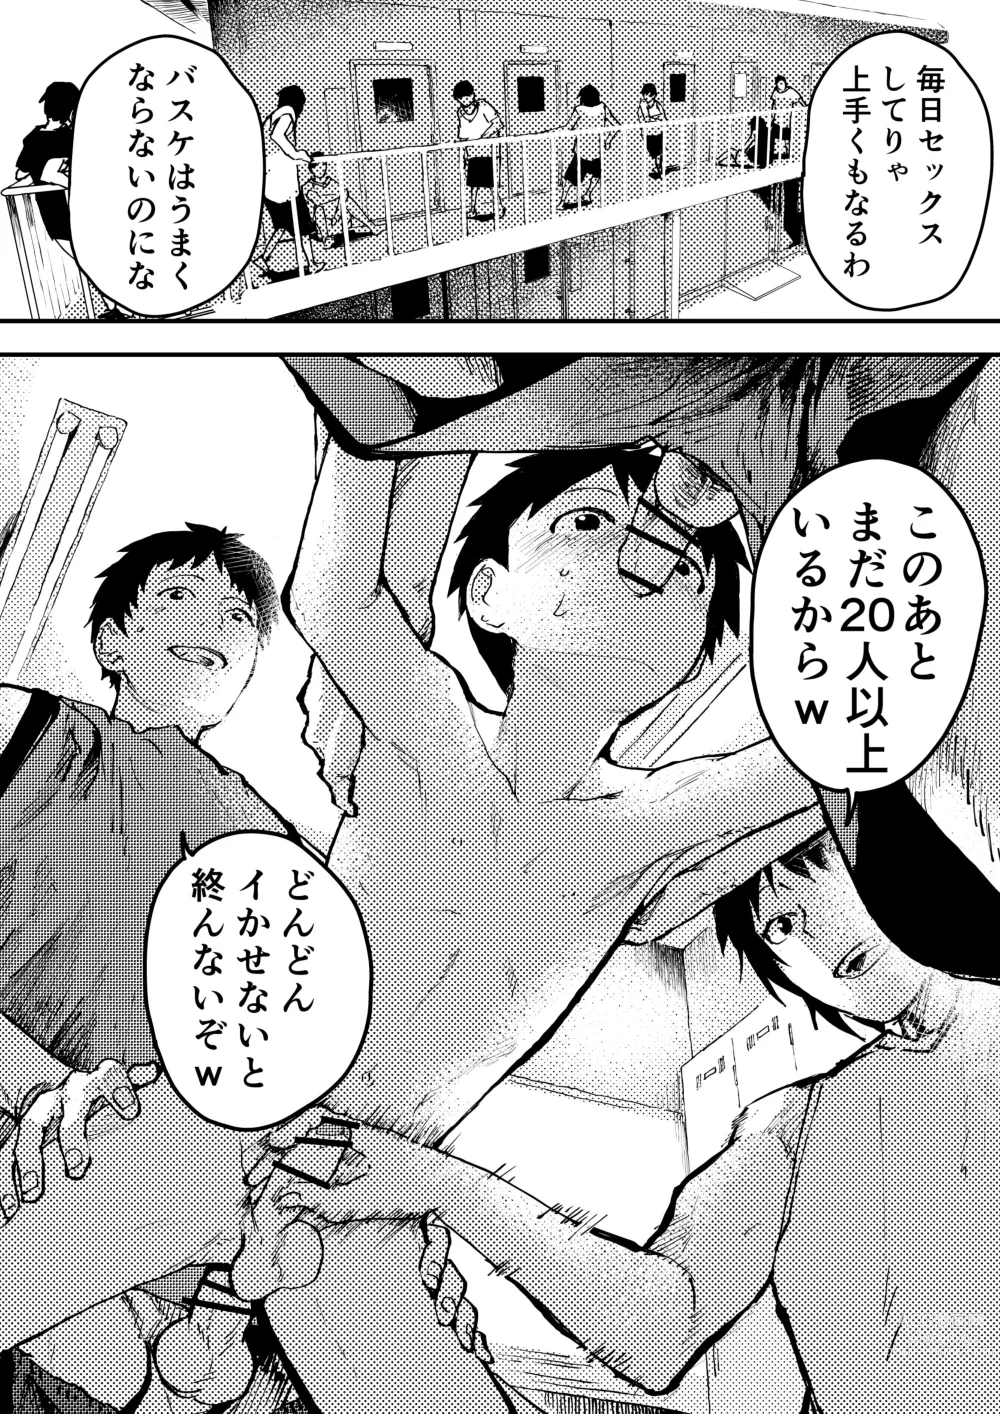 Page 14 of doujinshi Baske ga Heta dakara Shikata ga nai!